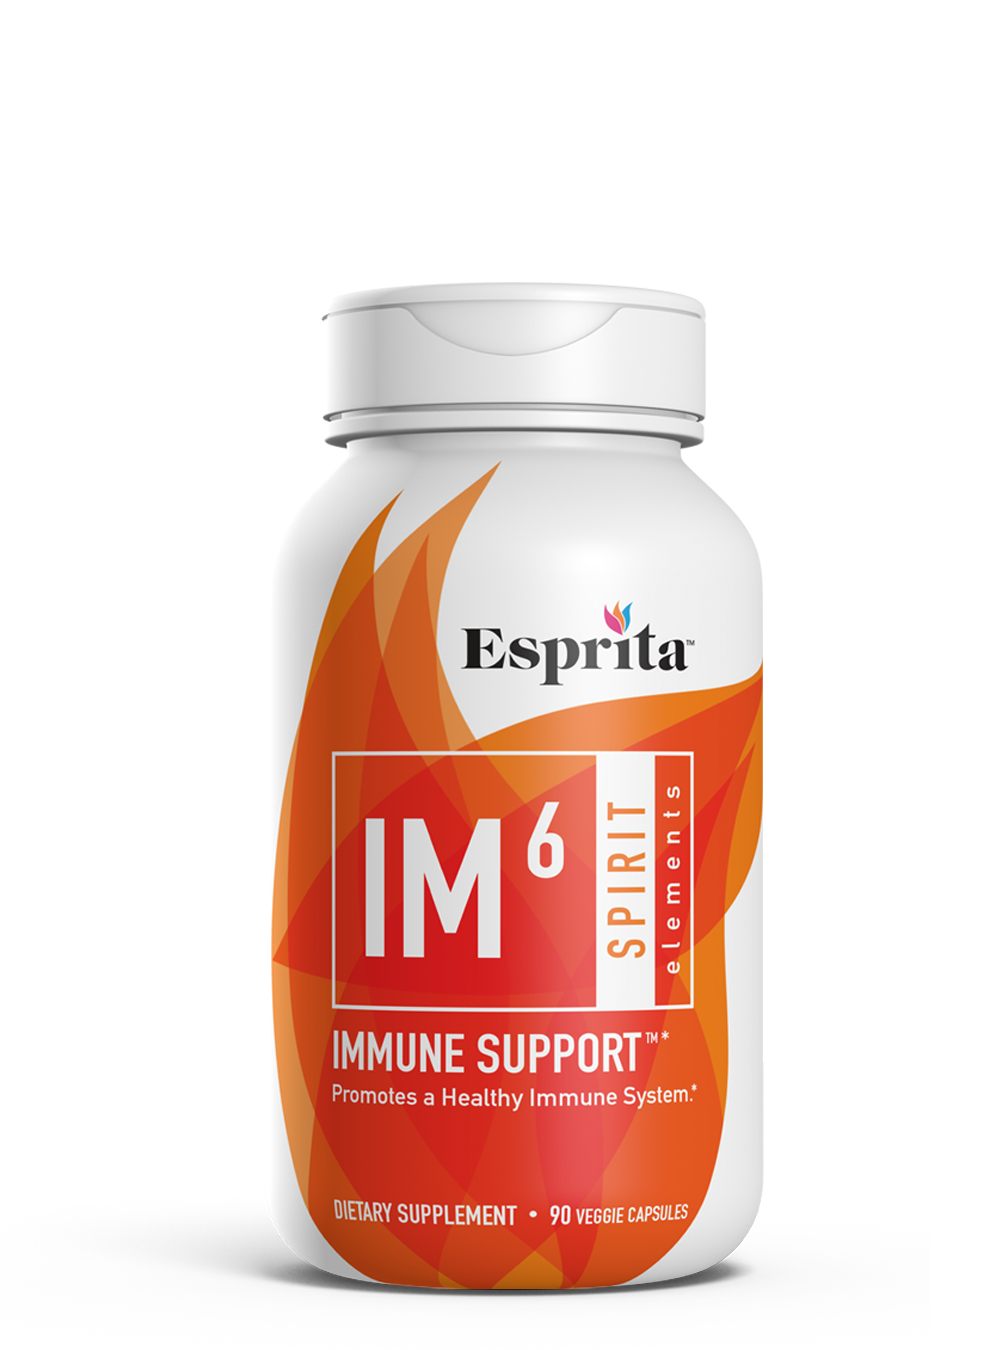 Immune Support™